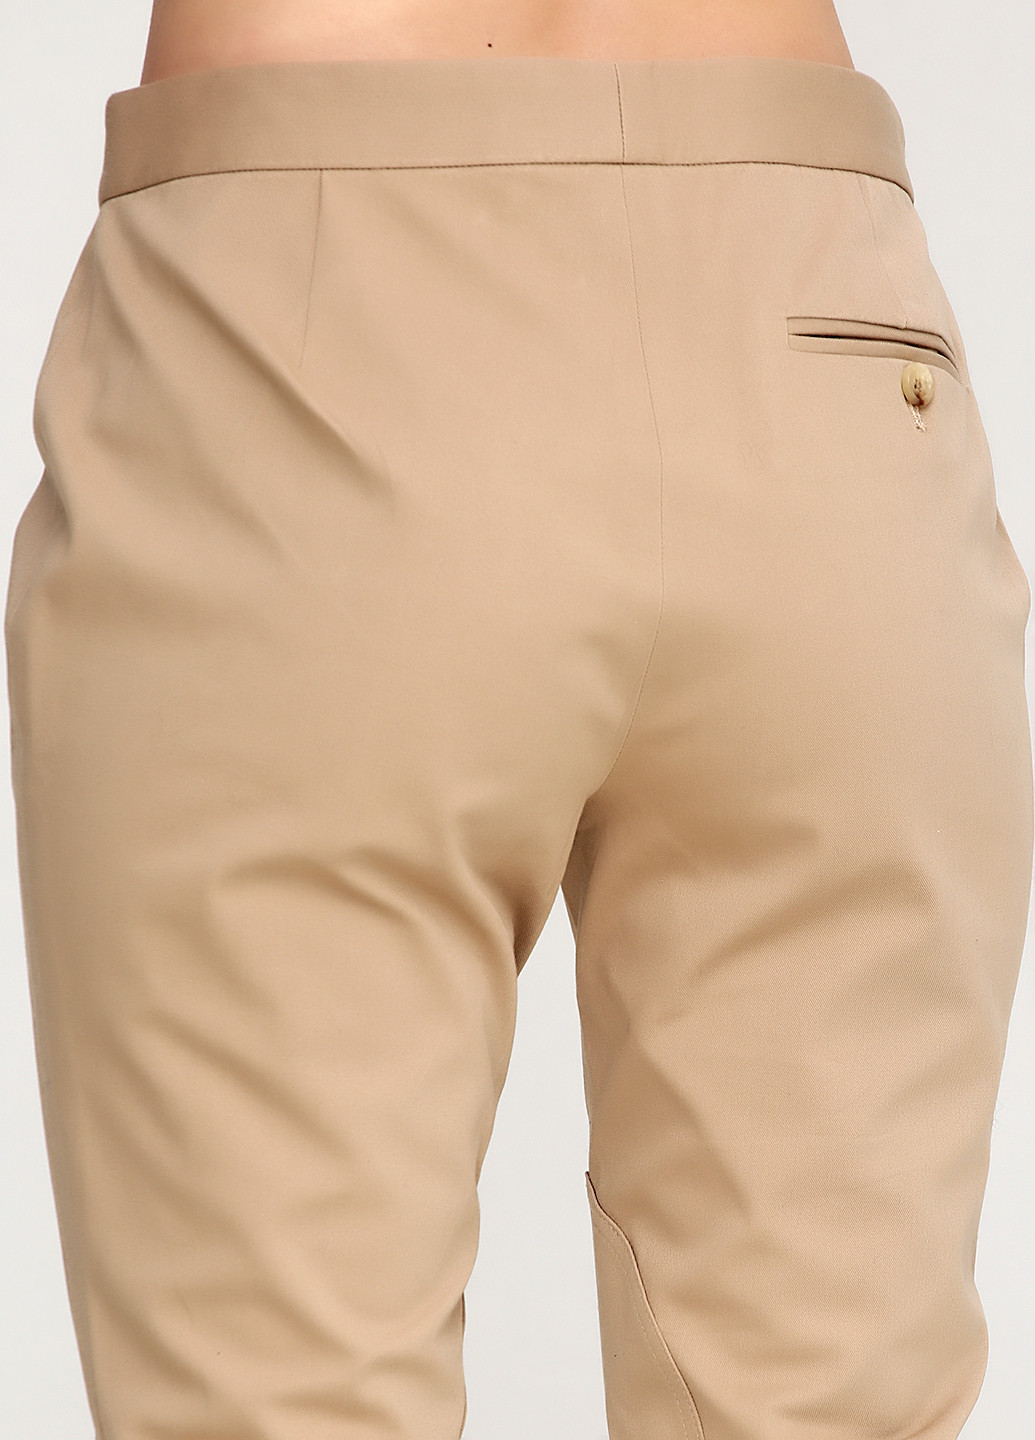 Бежевые кэжуал демисезонные зауженные брюки Ralph Lauren